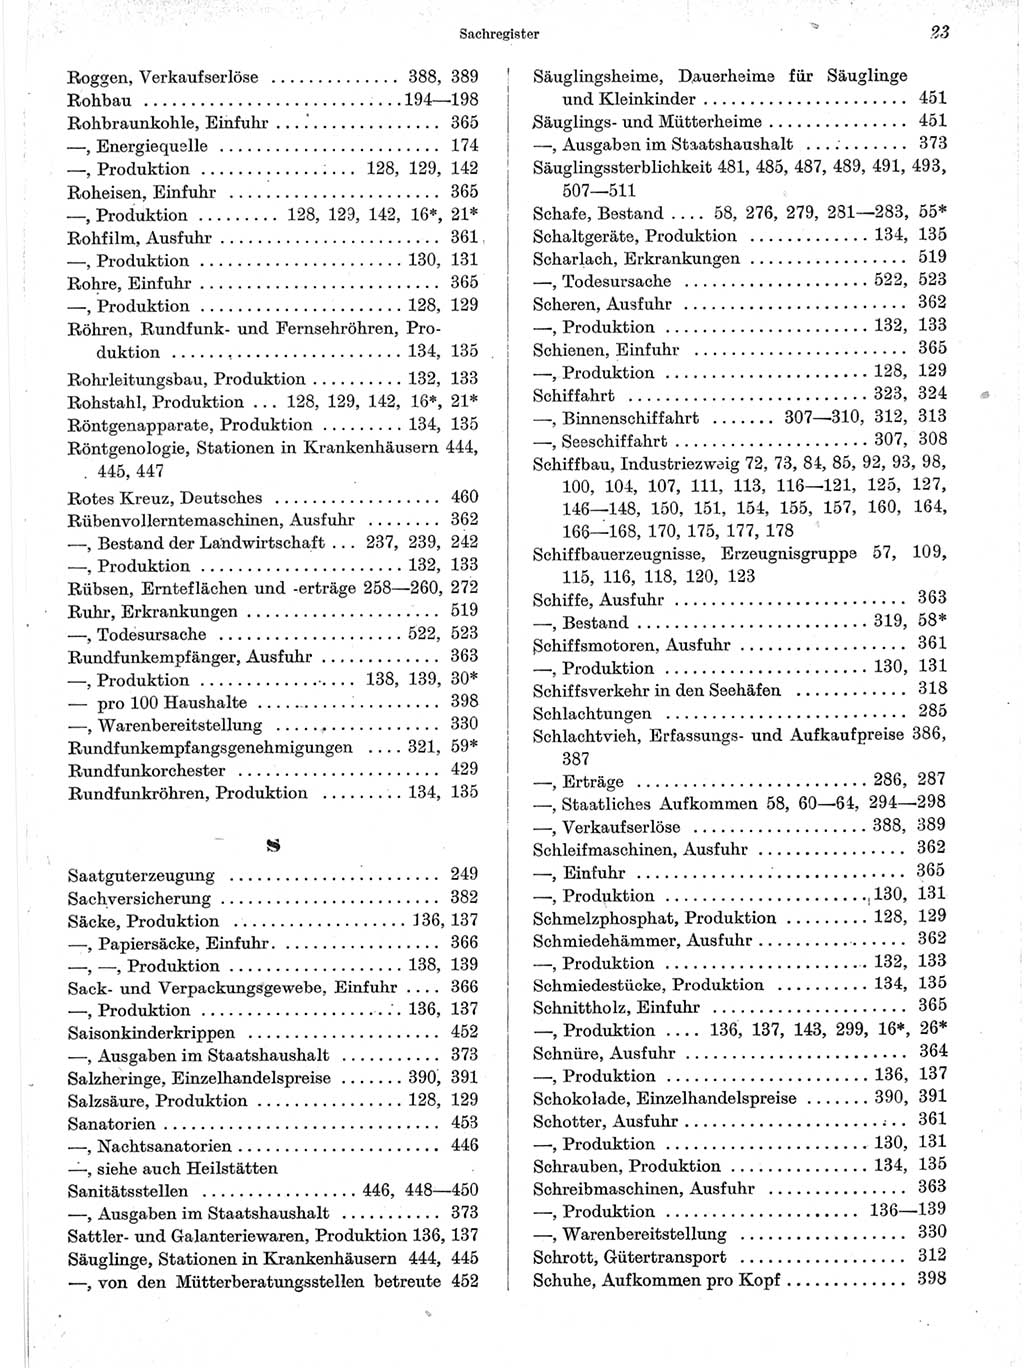 Statistisches Jahrbuch der Deutschen Demokratischen Republik (DDR) 1963, Seite 23 (Stat. Jb. DDR 1963, S. 23)